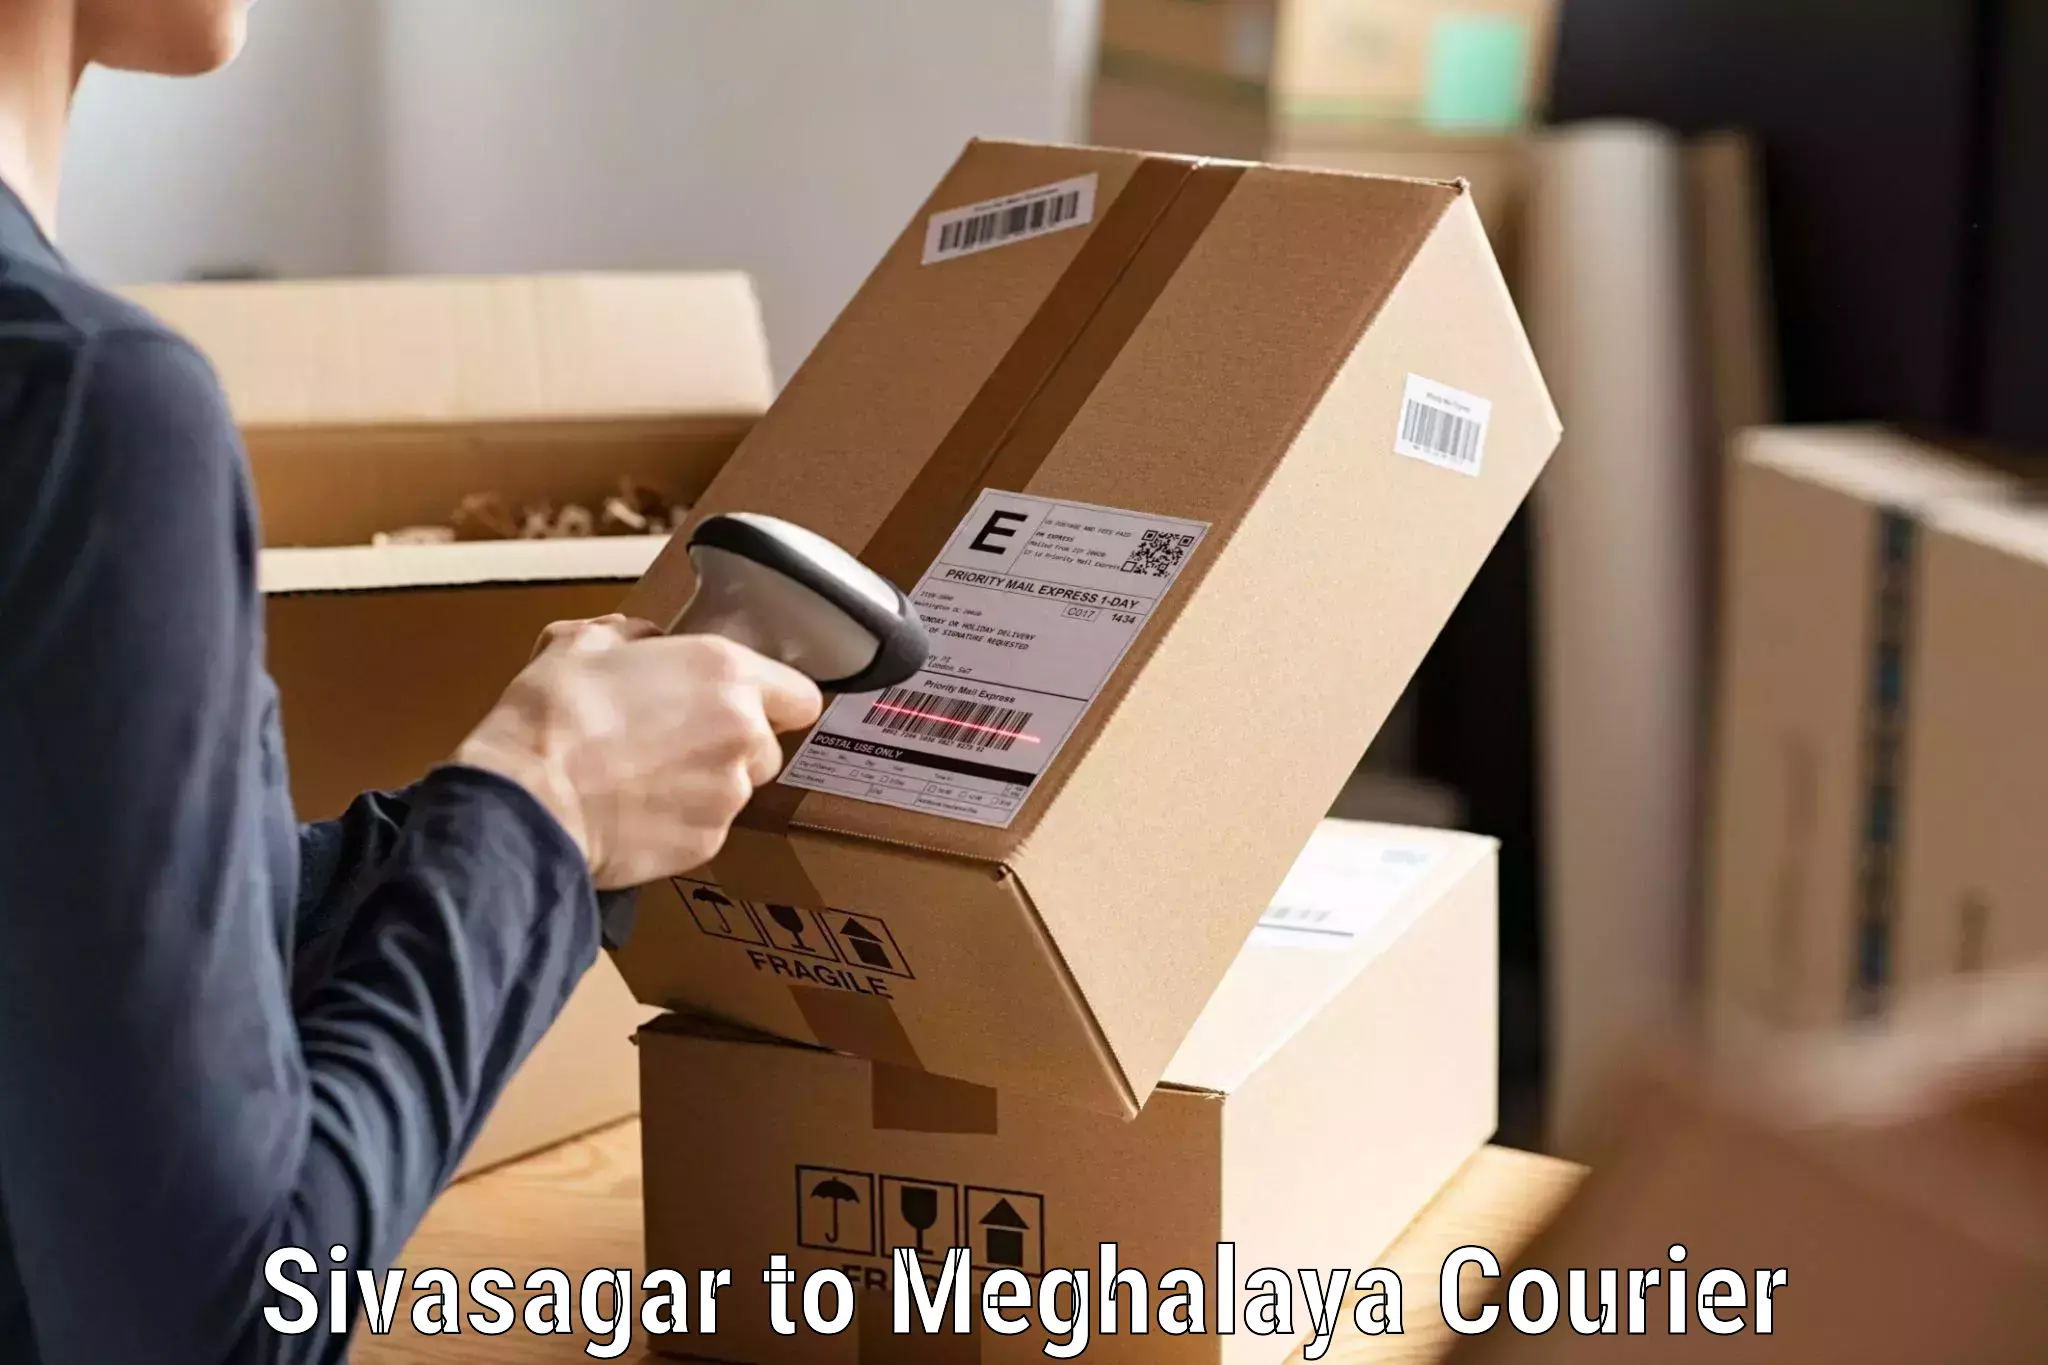 Trackable shipping service Sivasagar to Garobadha